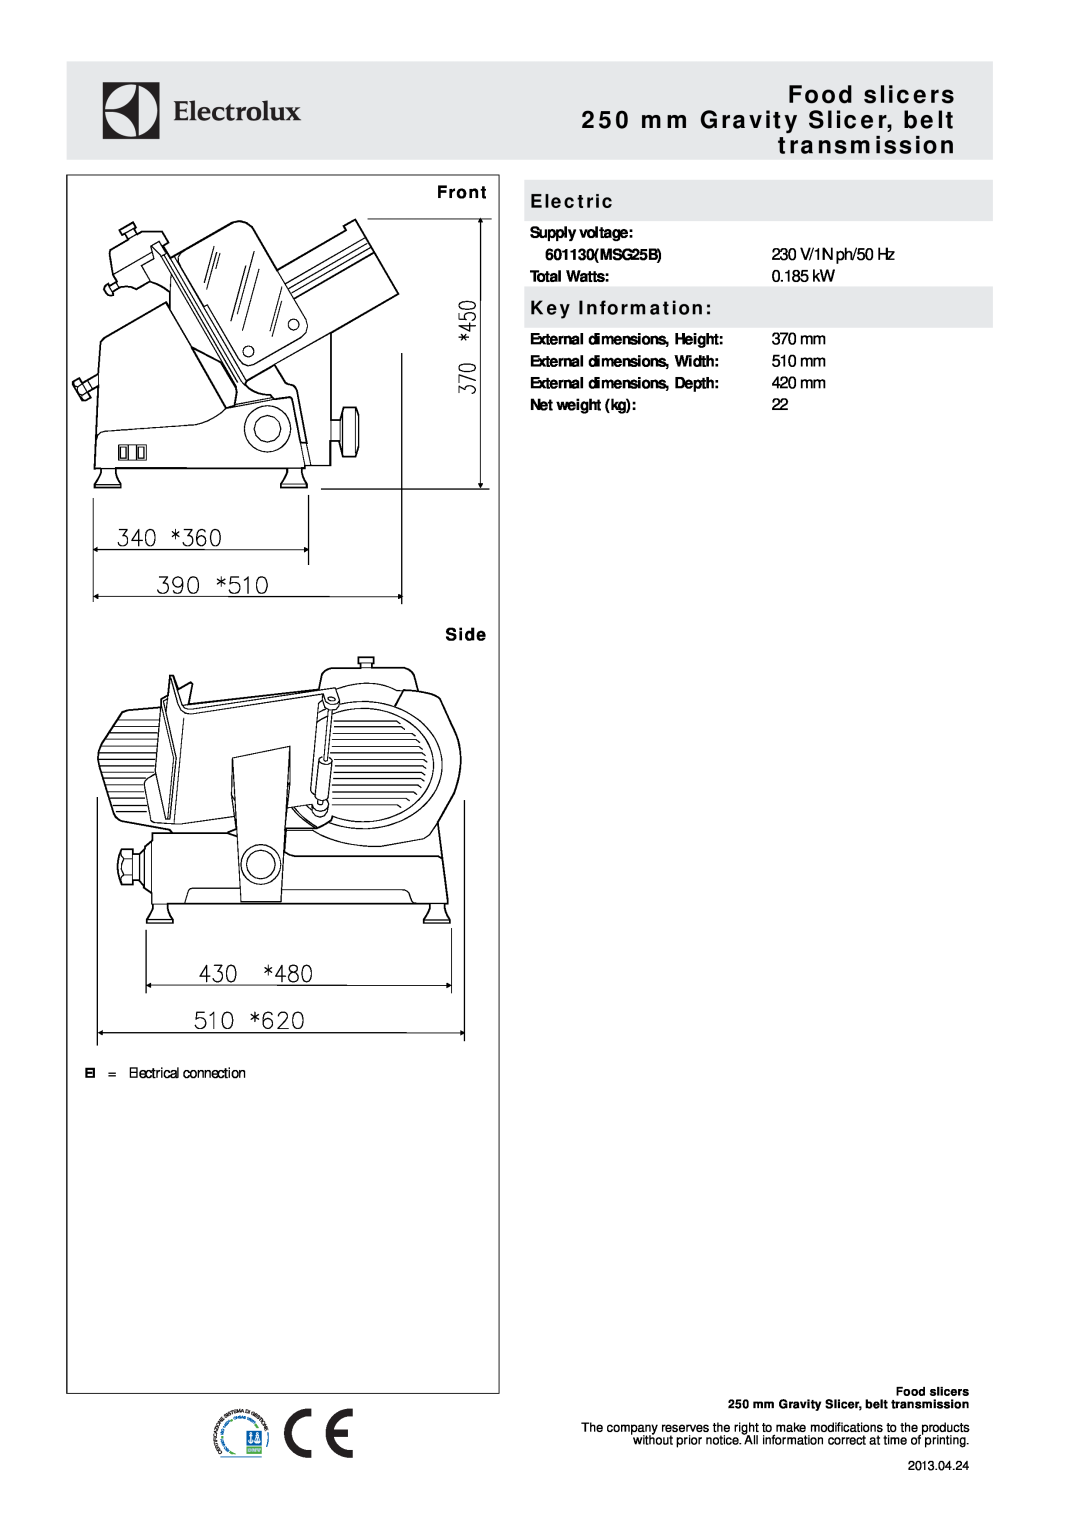 Electrolux 601130 (MSG25B) Front, Side, Food slicers 250 mm Gravity Slicer, belt transmission, Electric, Key Information 